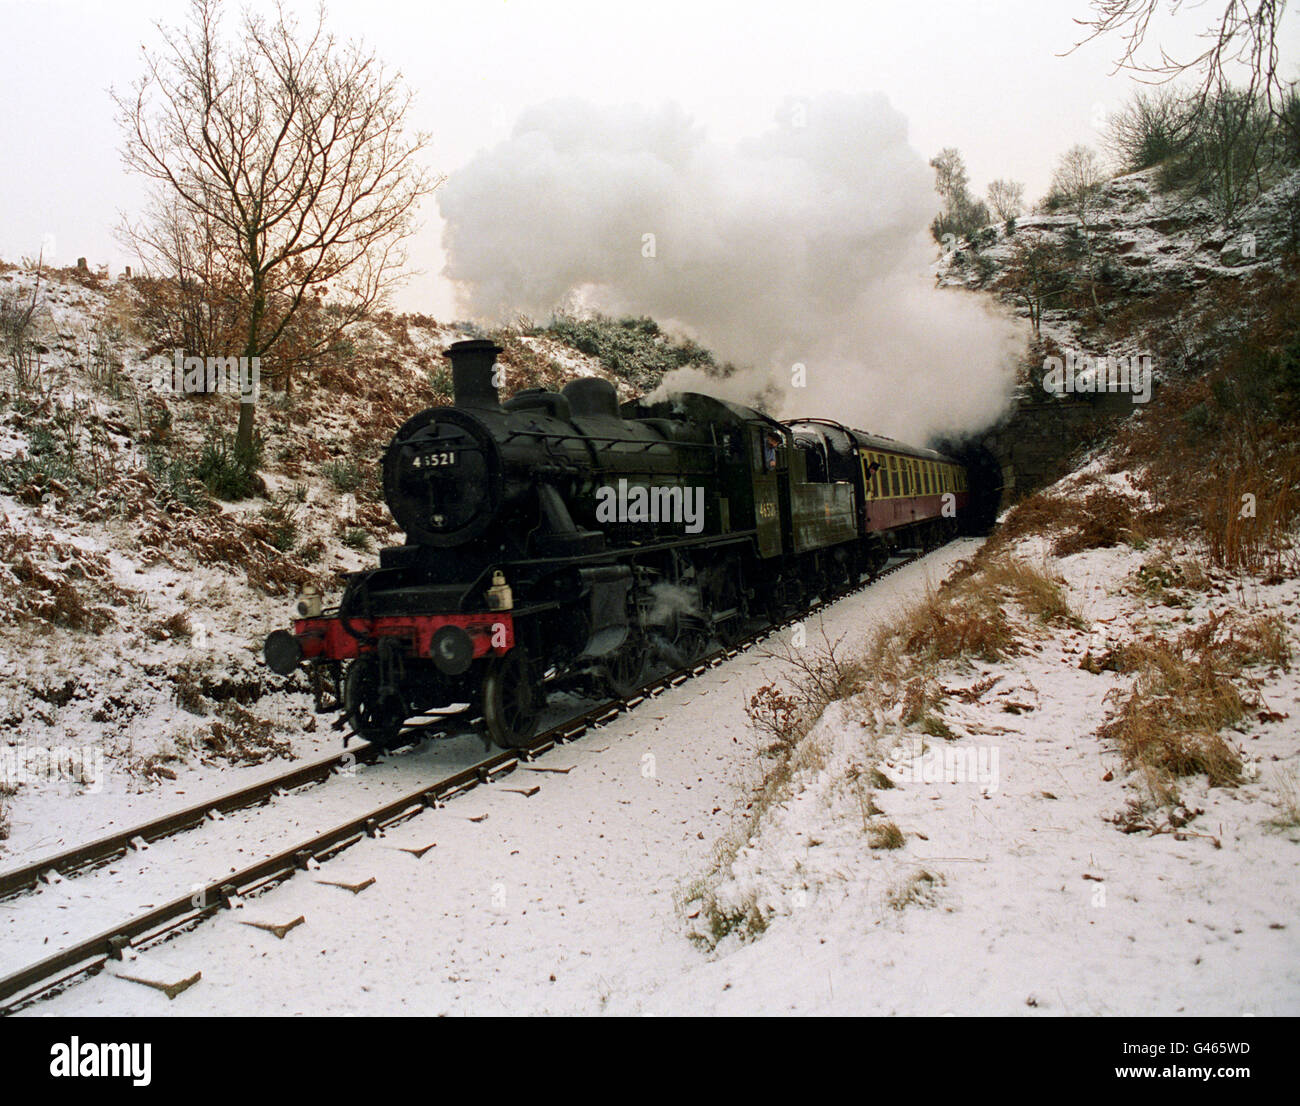 Der LMS-Entwurf 2-6-0 der Severn Valley Railway verlässt den Bewdley-Tunnel. Die bereits malerische Strecke wurde nach einem nächtlichen Sturz zusätzlich von Schnee angezogen. Die in den 50er Jahren gebaute Lokomotive wurde auf Zweigs- und Landstraßen eingesetzt, spielte aber in jüngerer Zeit eine Hauptrolle in der Comedy-Serie "Oh Doctor Beeching", die in der nahe gelegenen Arley gedreht wurde und für die sie wieder "Blossom" getauft wurde. Stockfoto